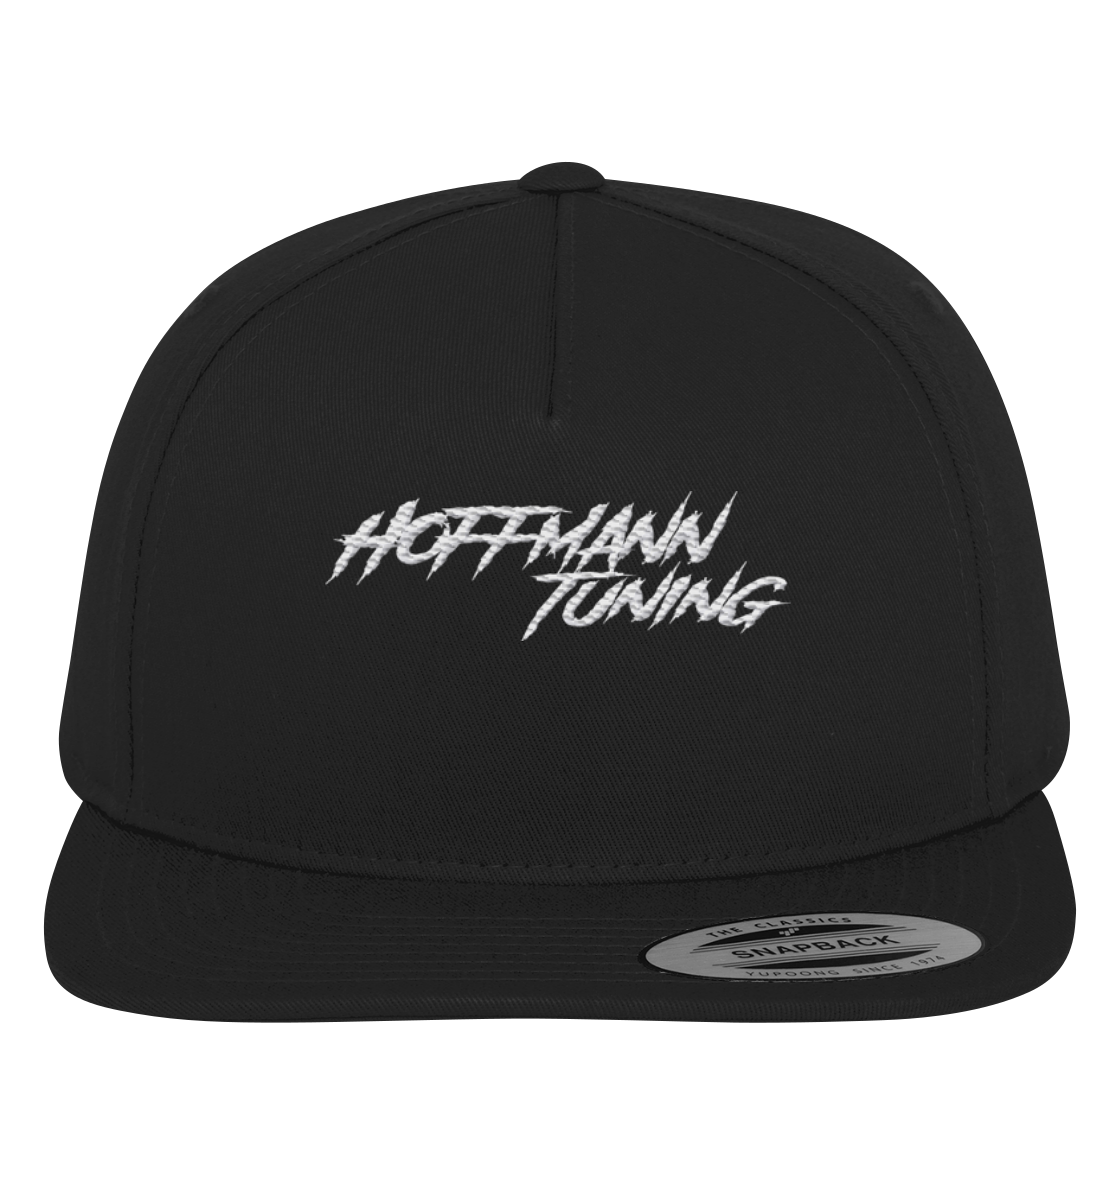 Hoffmann Tuning Edition - Premium Snapback Mütze Erwachsene schwarz